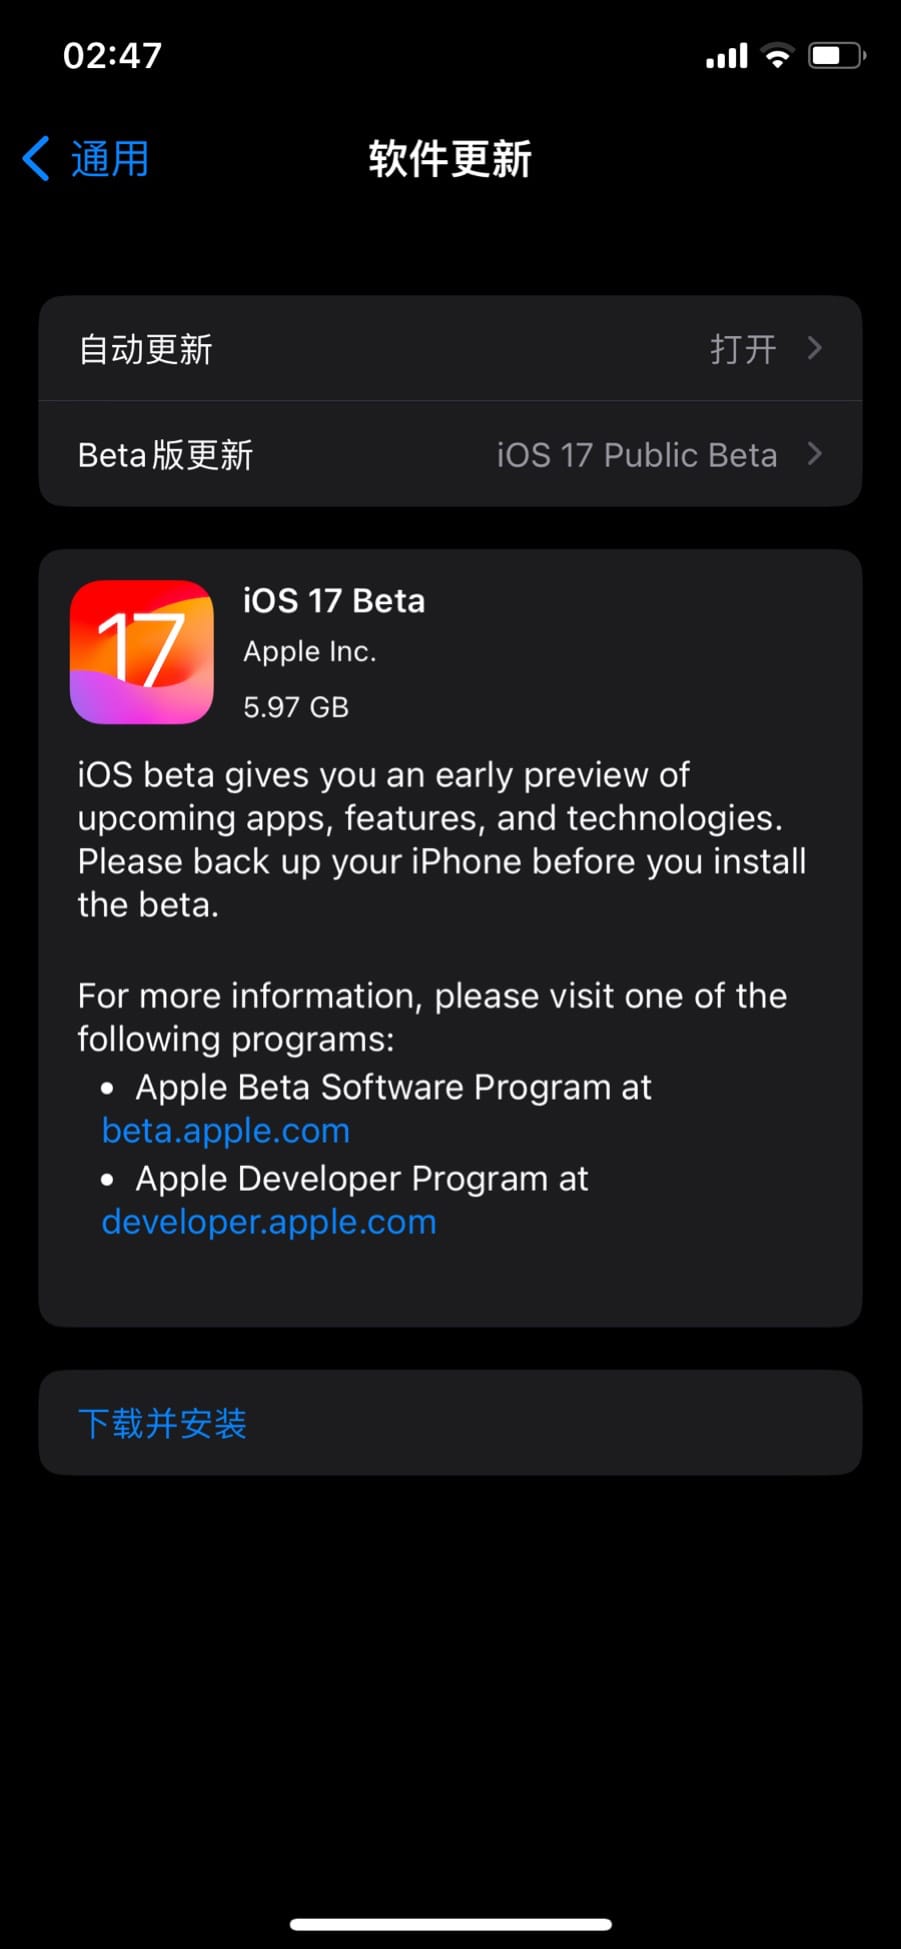 苹果推送 iOS / iPadOS 17 首个公测版